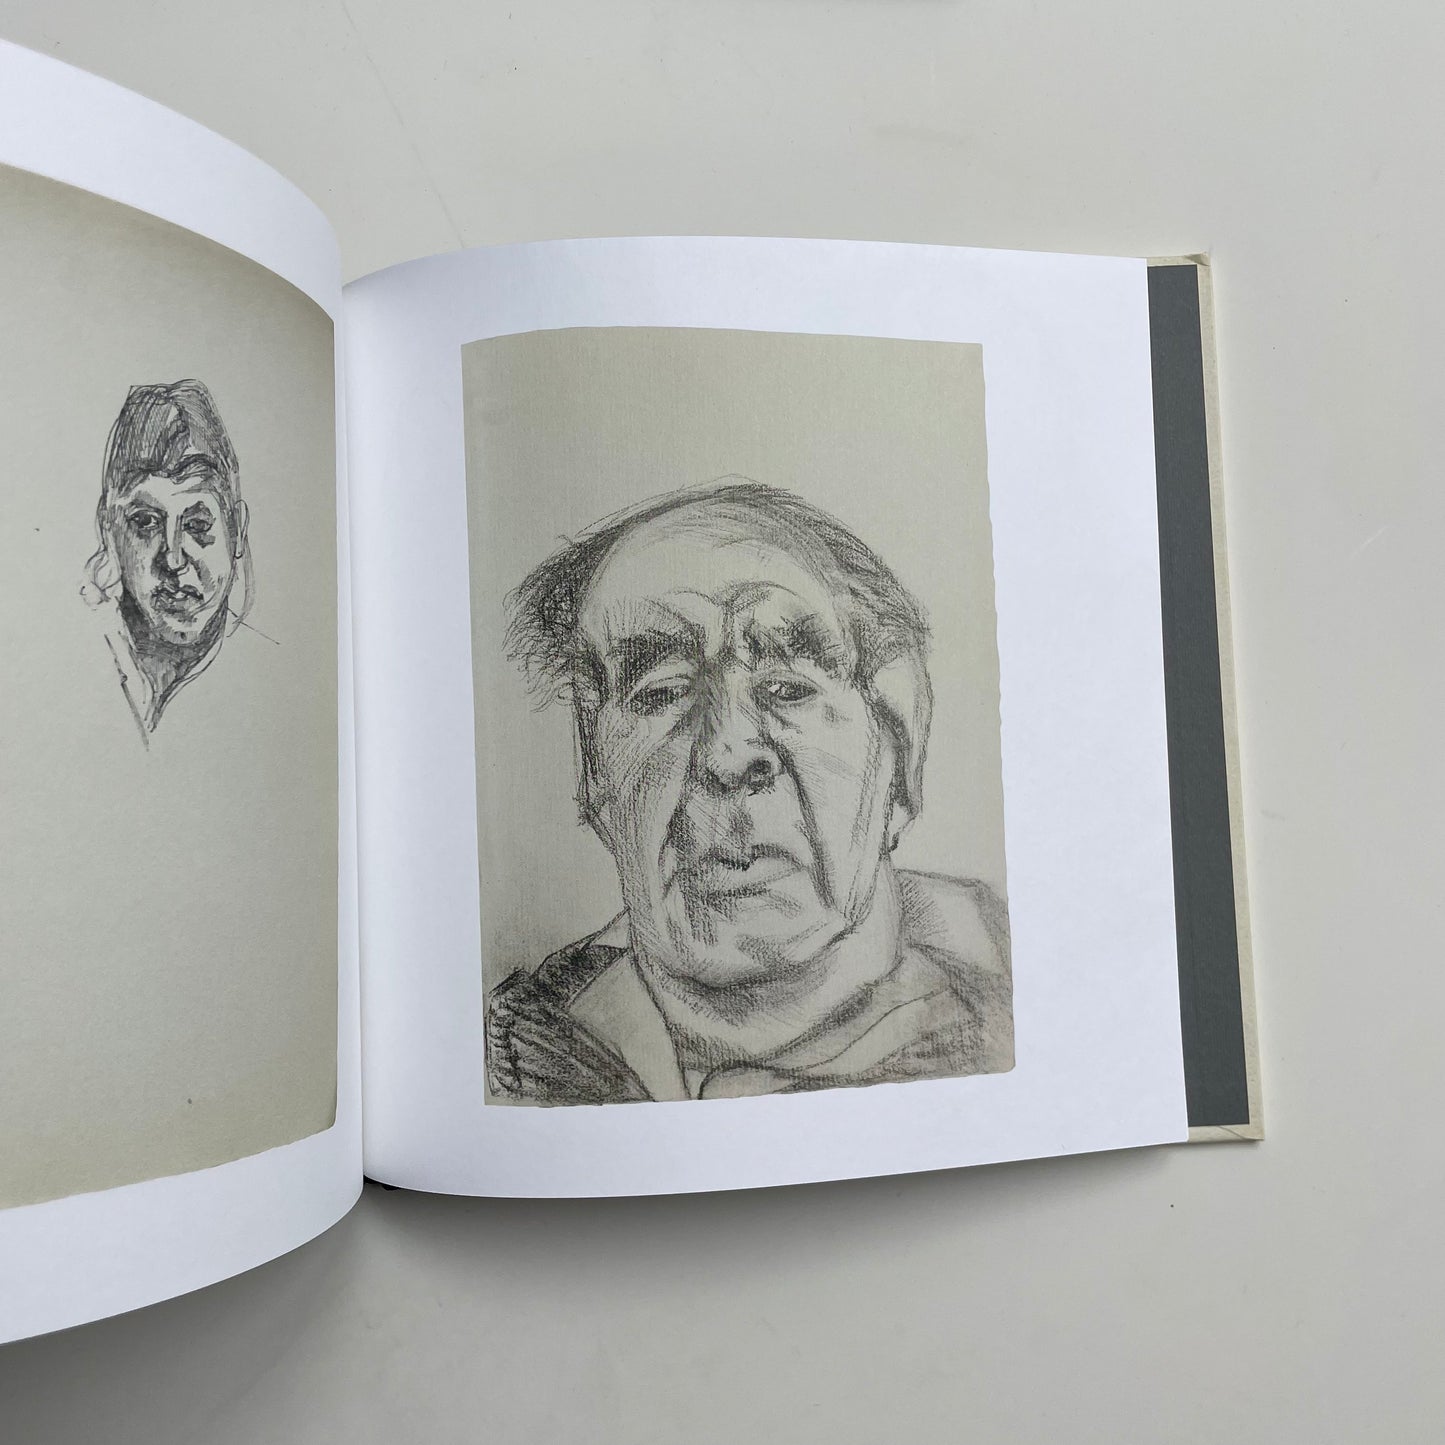 Lucian Freud's Sketchbooks